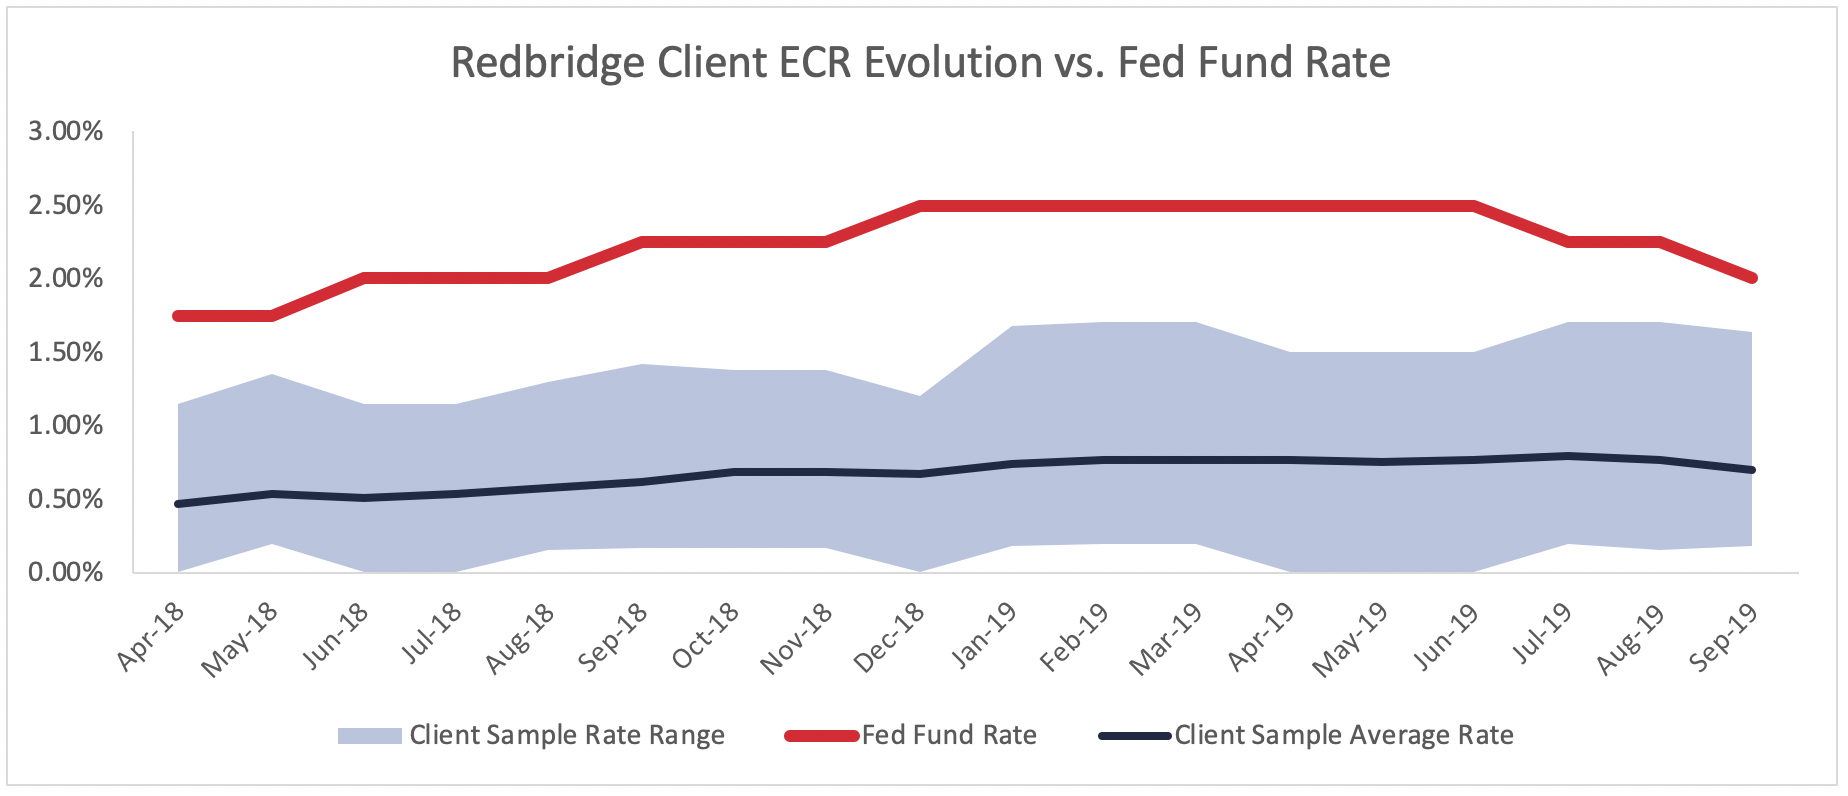 Graph showing redbridge clients' ecr evolution vs fed fund rate